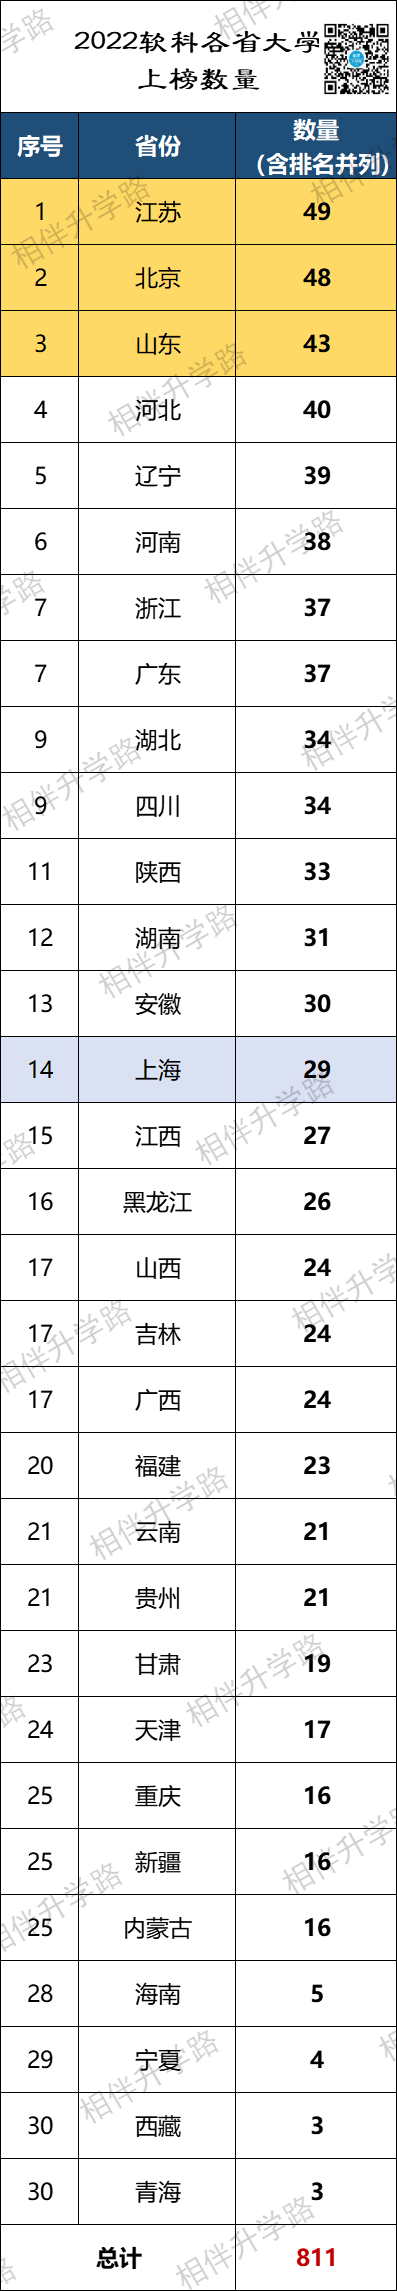 2022年软科中国大学排名公布上海29所高校入围11所双非进百强